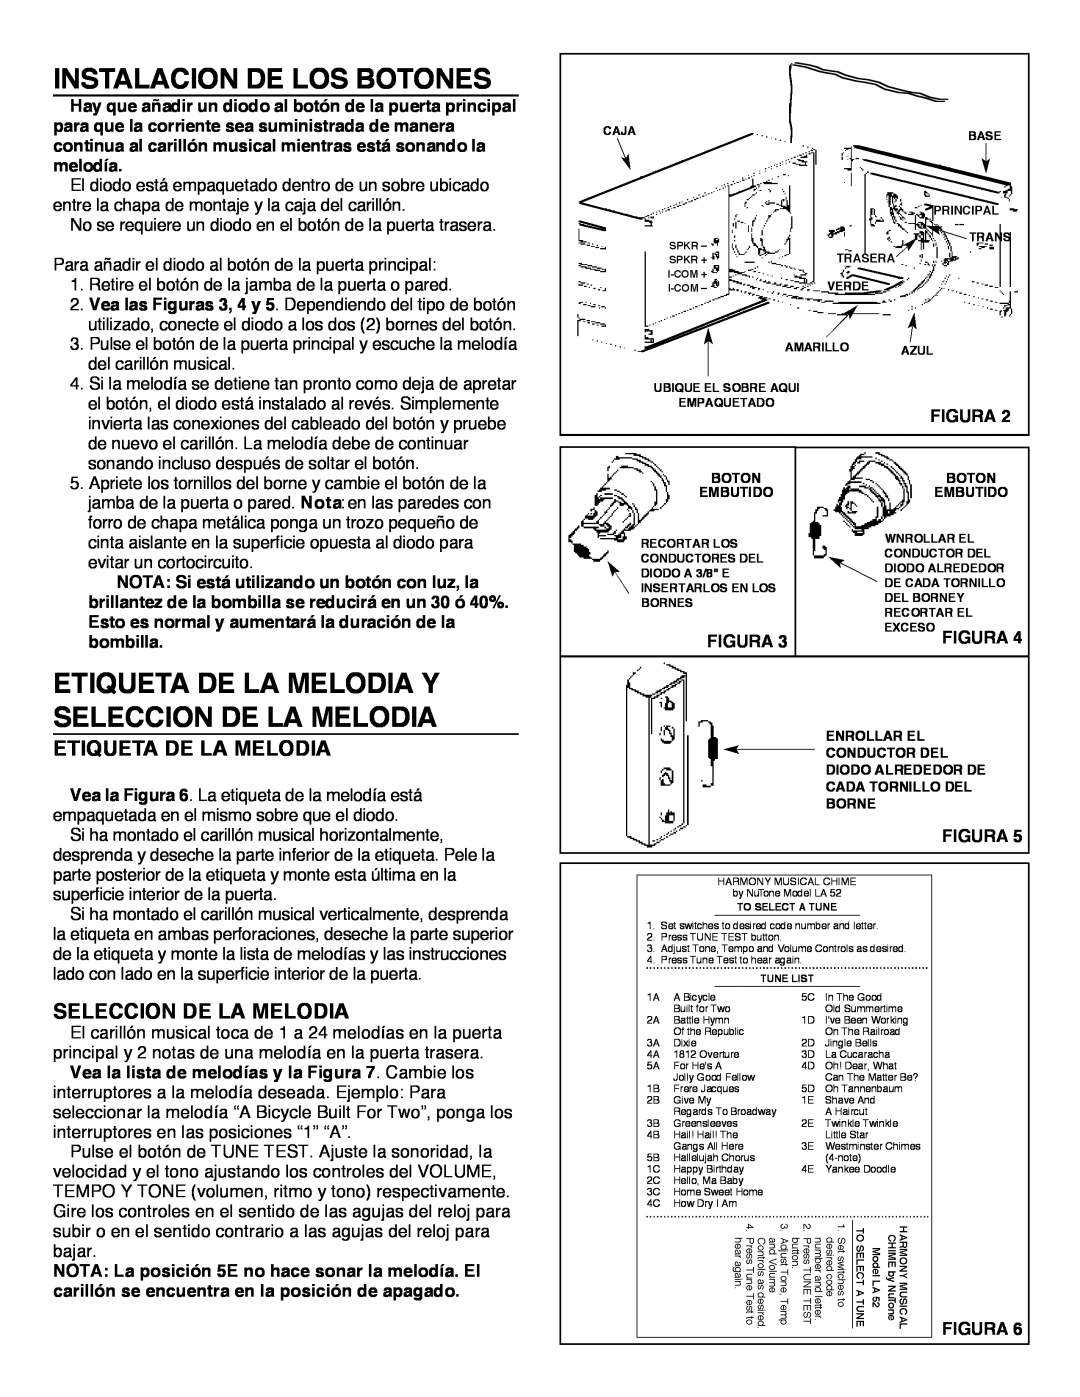 NuTone LA-52 Series installation instructions Instalacion De Los Botones, Etiqueta De La Melodia Y Seleccion De La Melodia 